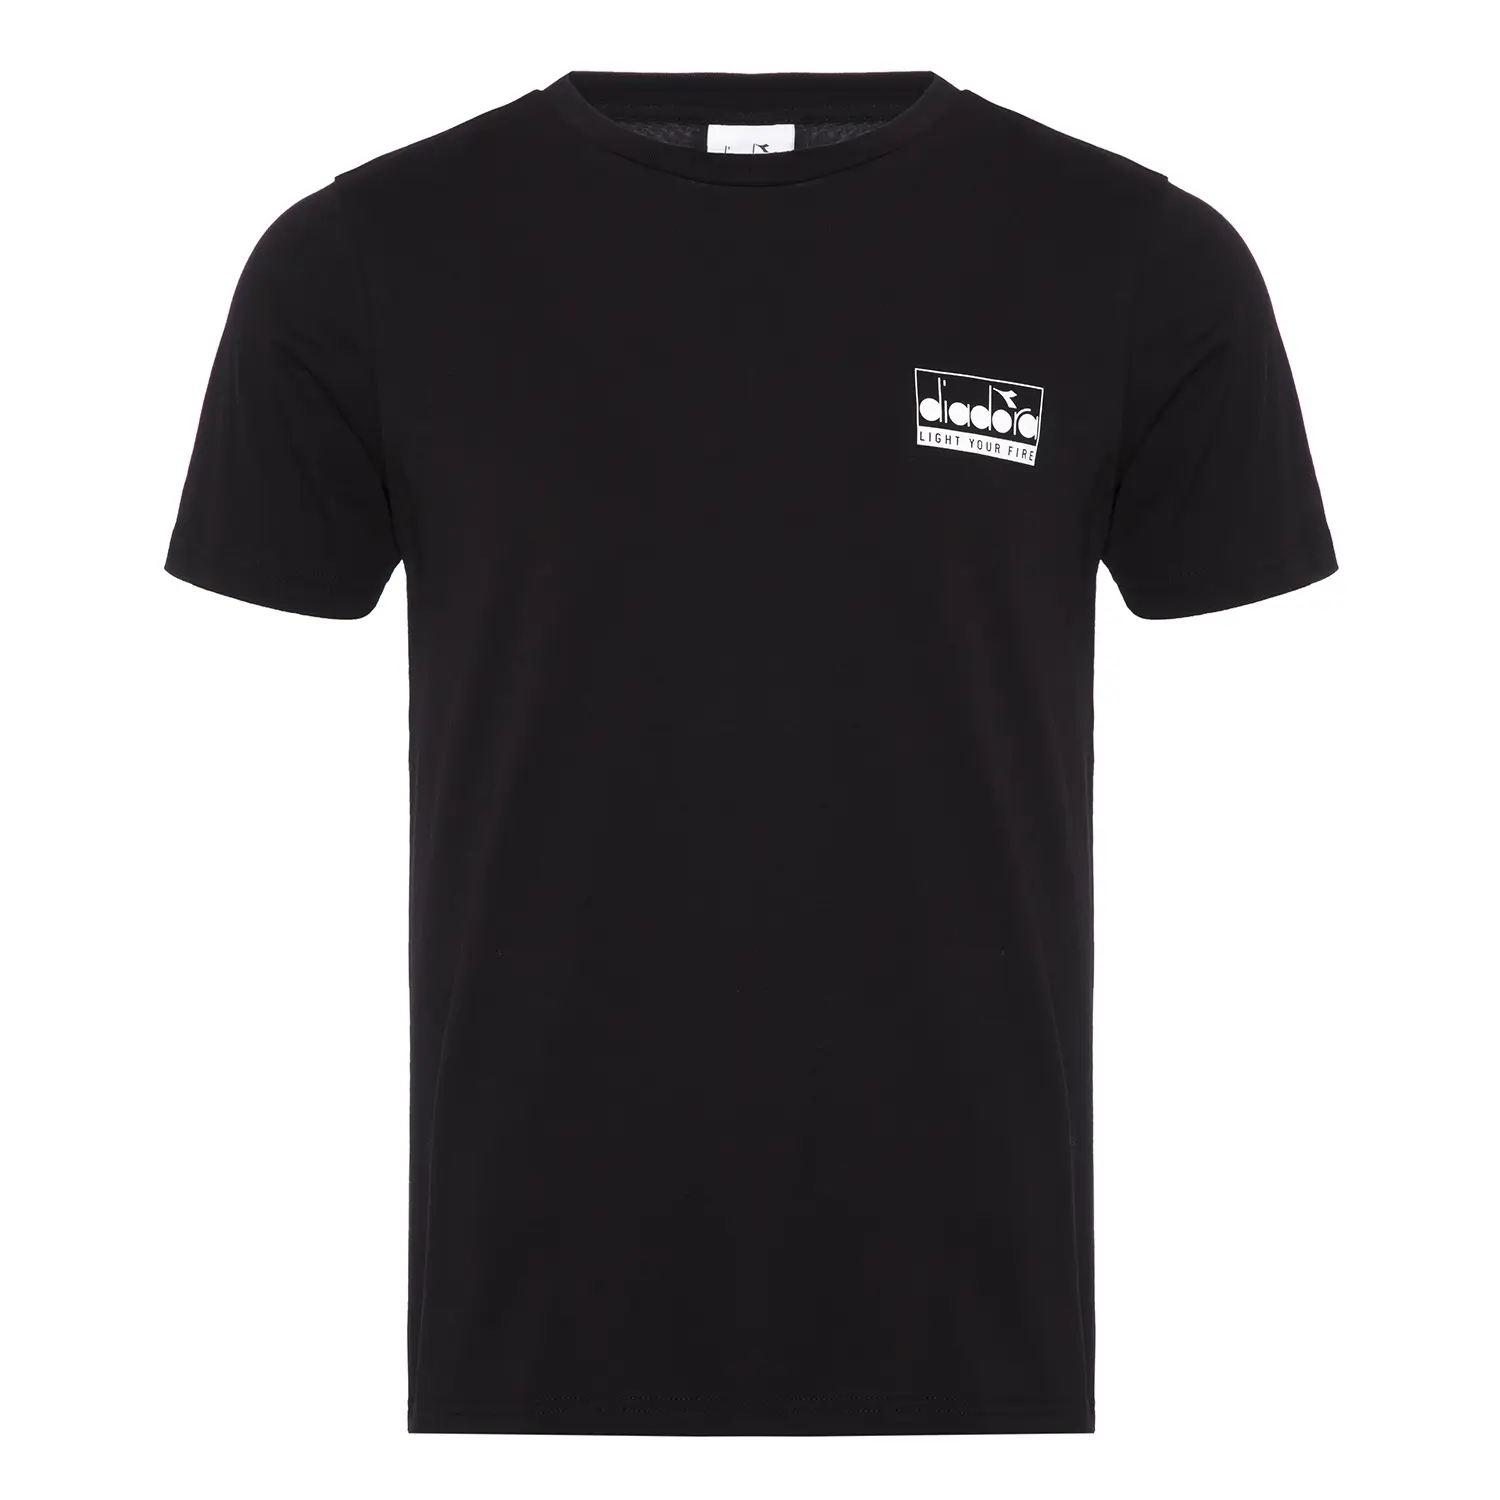 Diadora Ss T-shirt Light Your Fire Siyah Erkek Tişört - 502.175837-80013